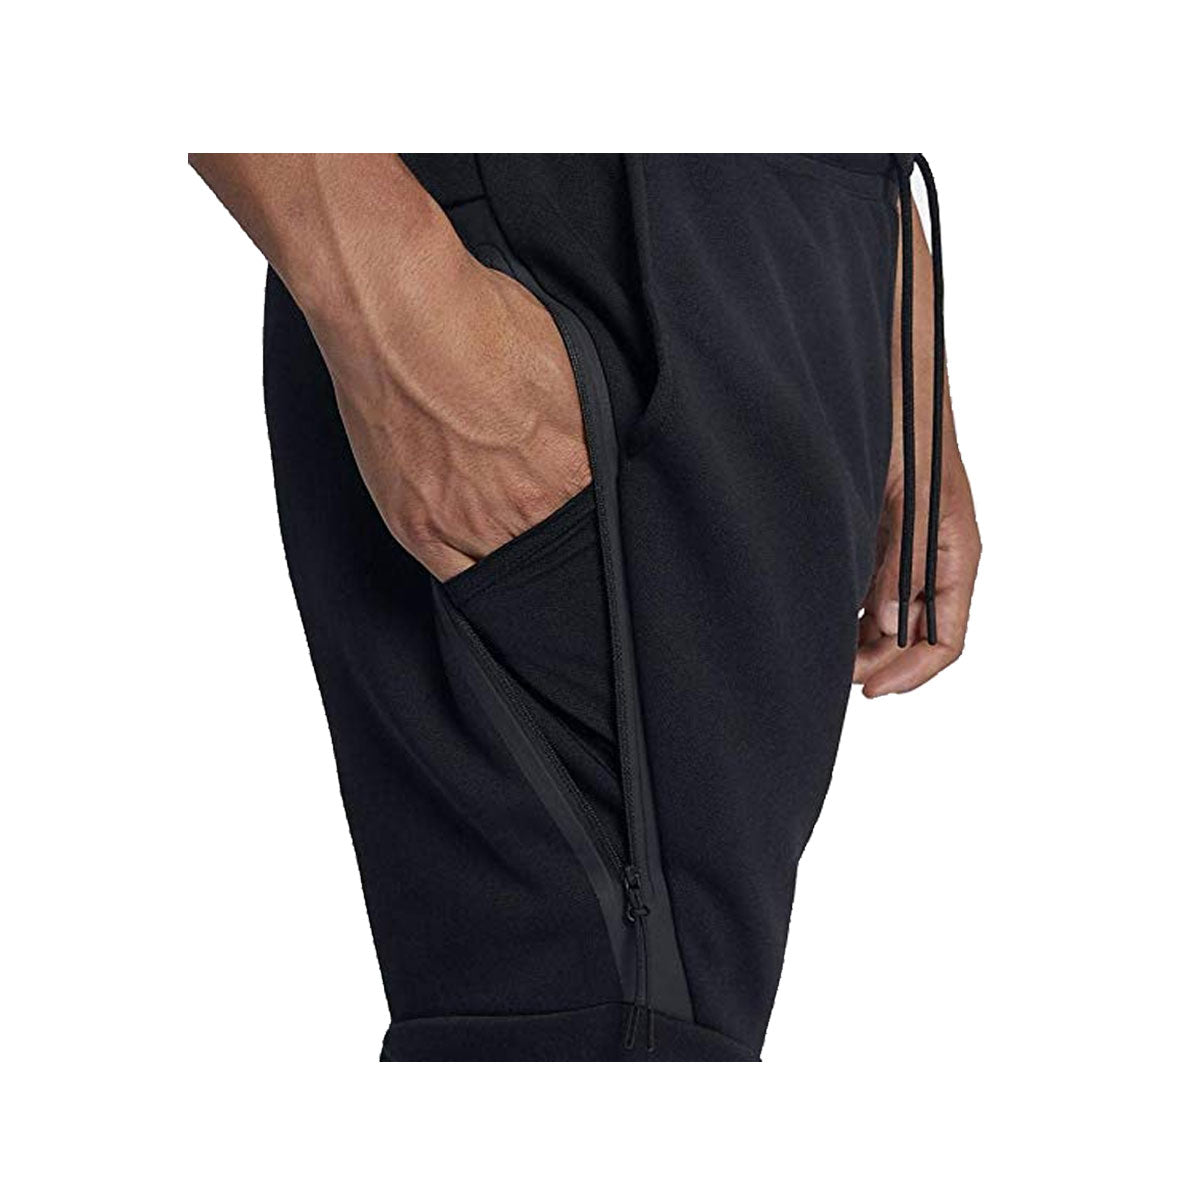 Nike Men's Sportswear Tech Fleece Pants Black - KickzStore